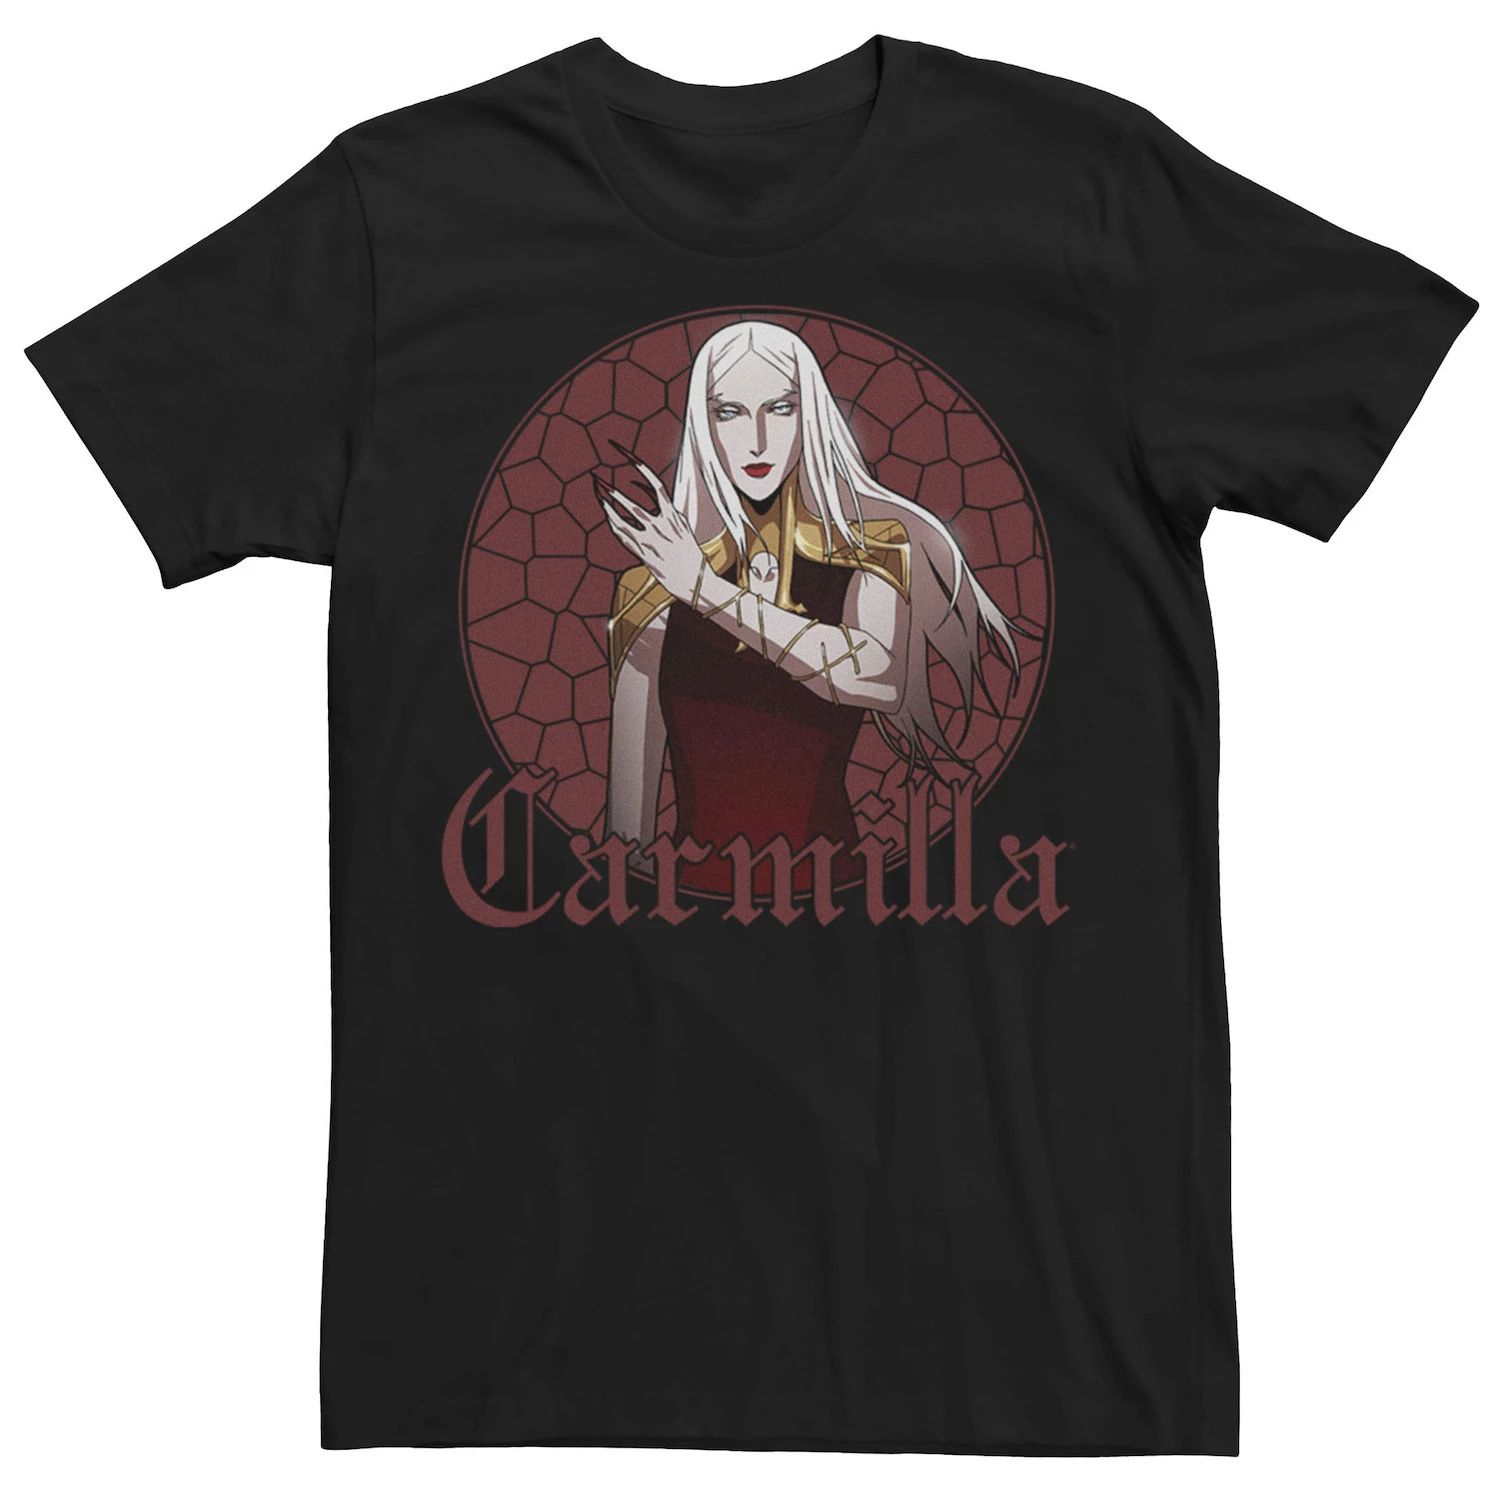 Мужская футболка с портретом Netflix Castlevania Carmilla Licensed Character цена и фото